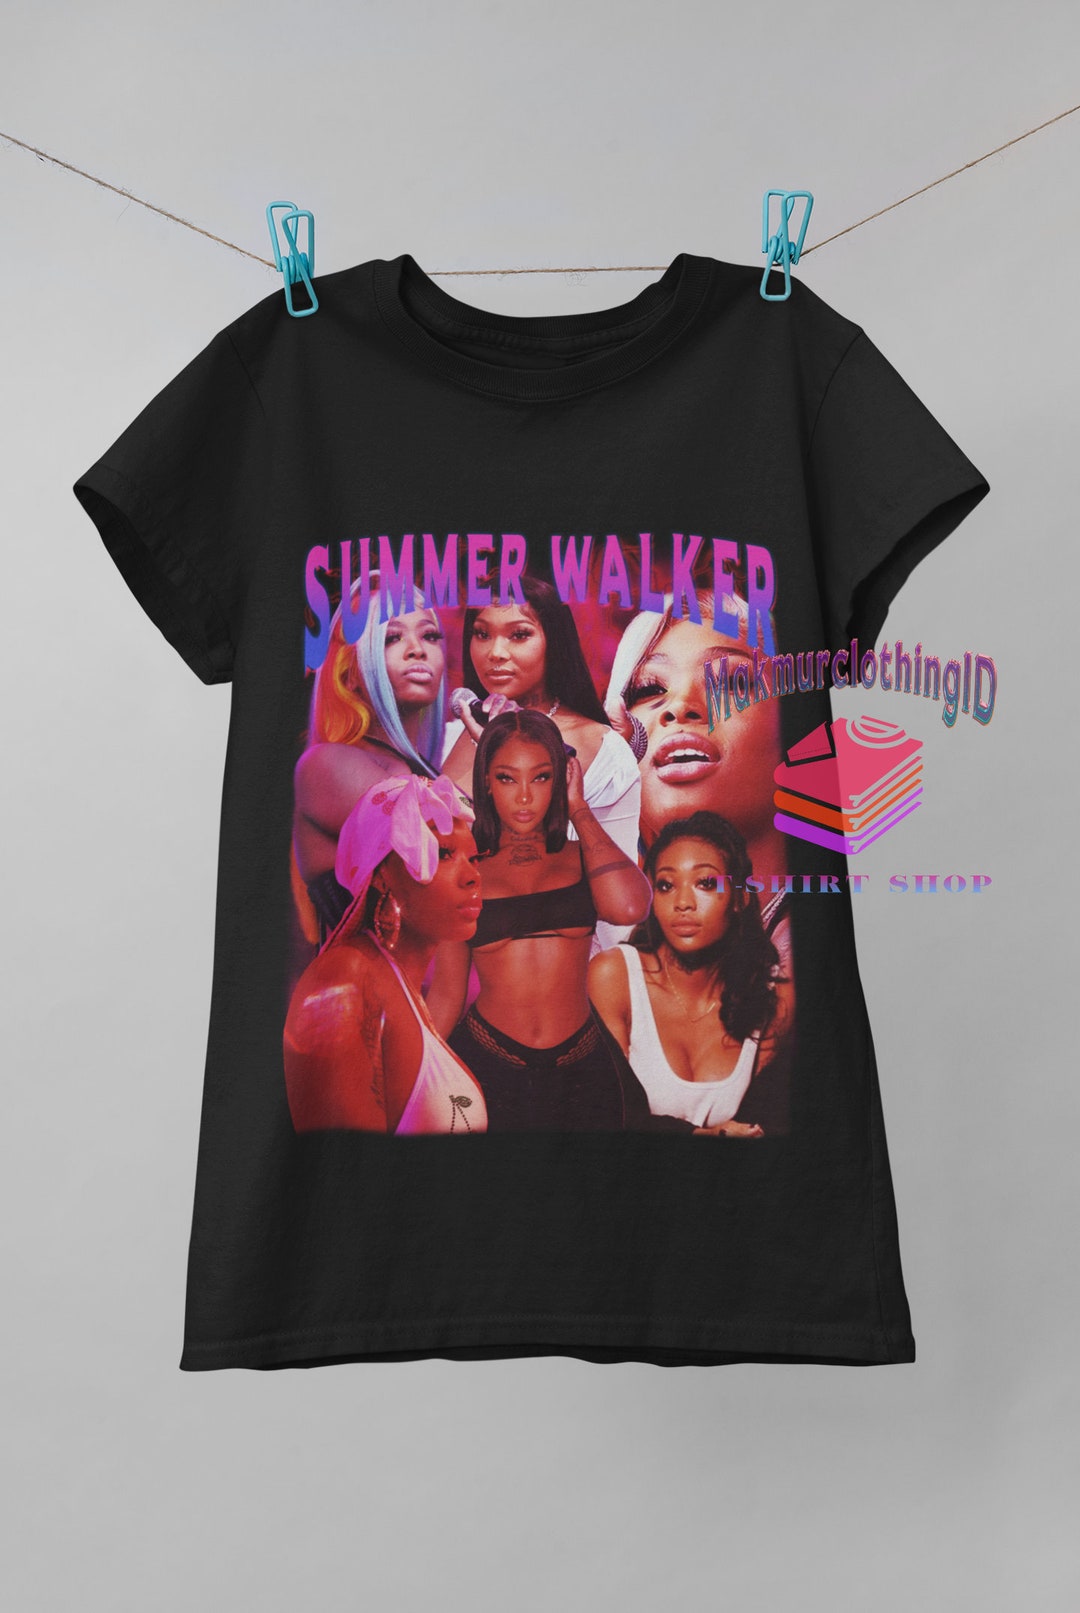 Summer Walker Shirt, Summer Walker Rapper Hip Hop Vintage Print T-shirt ...